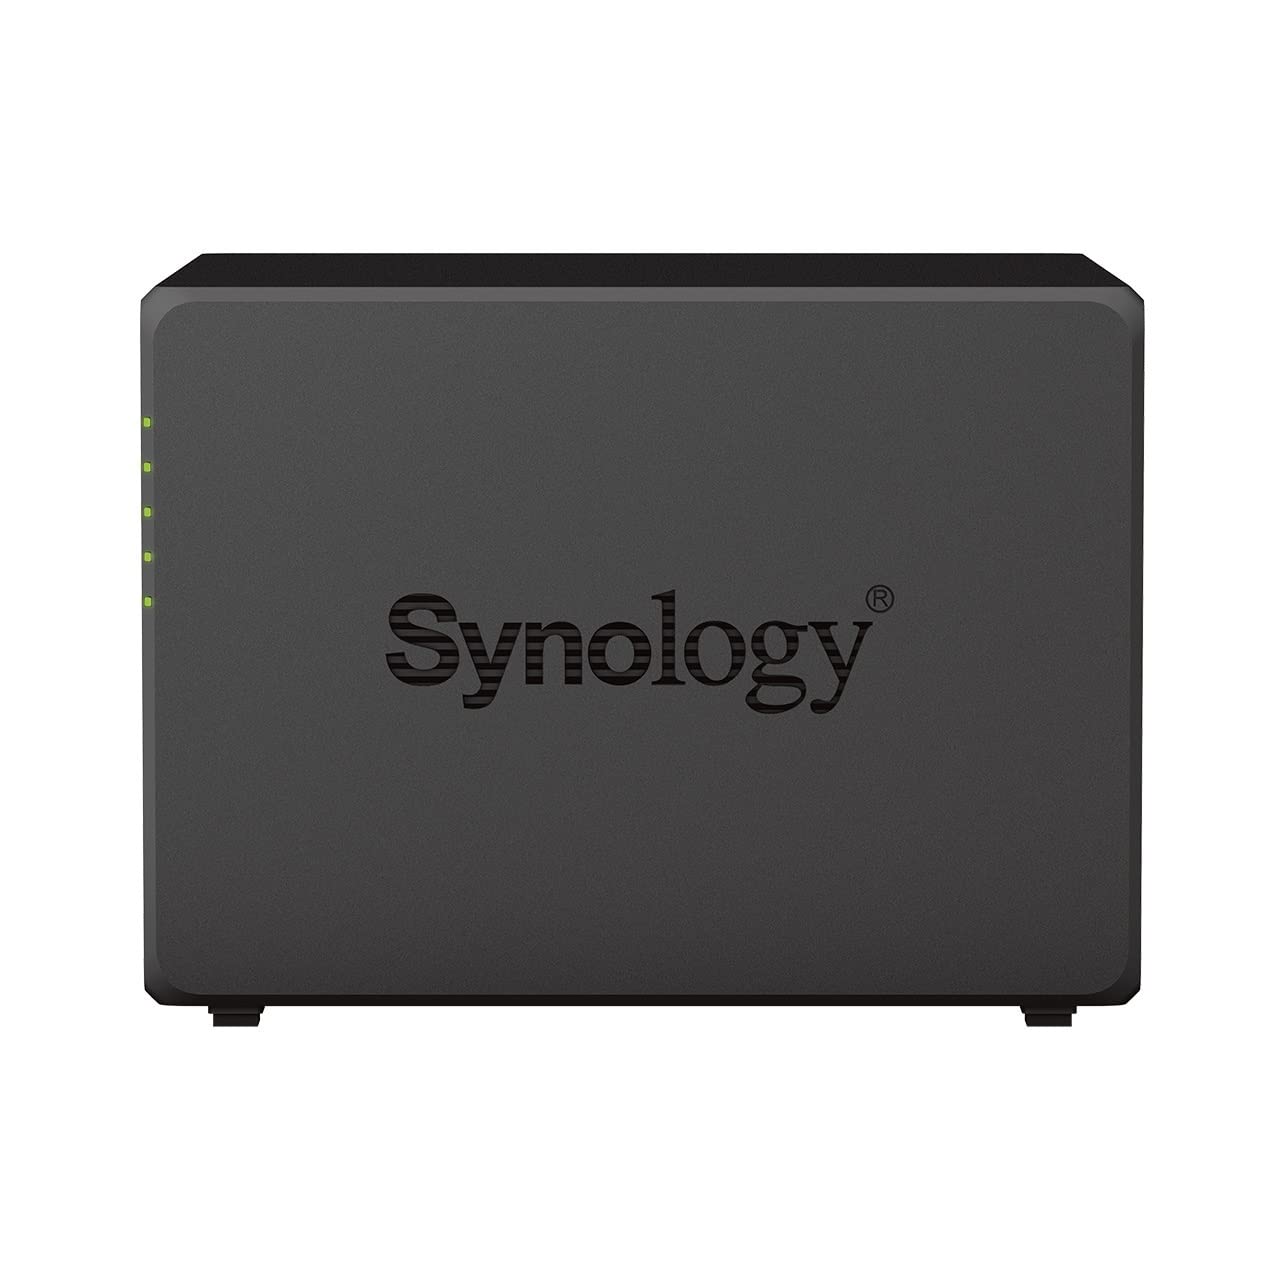 Synology DS923+ - NAS a 4 bay (AMD Ryzen™ 4 thread R1600 dual-core 4 GB RAM 2 RJ-45 1GbE 4 dischi rigidi NAS Seagate IronWolf da 10TB